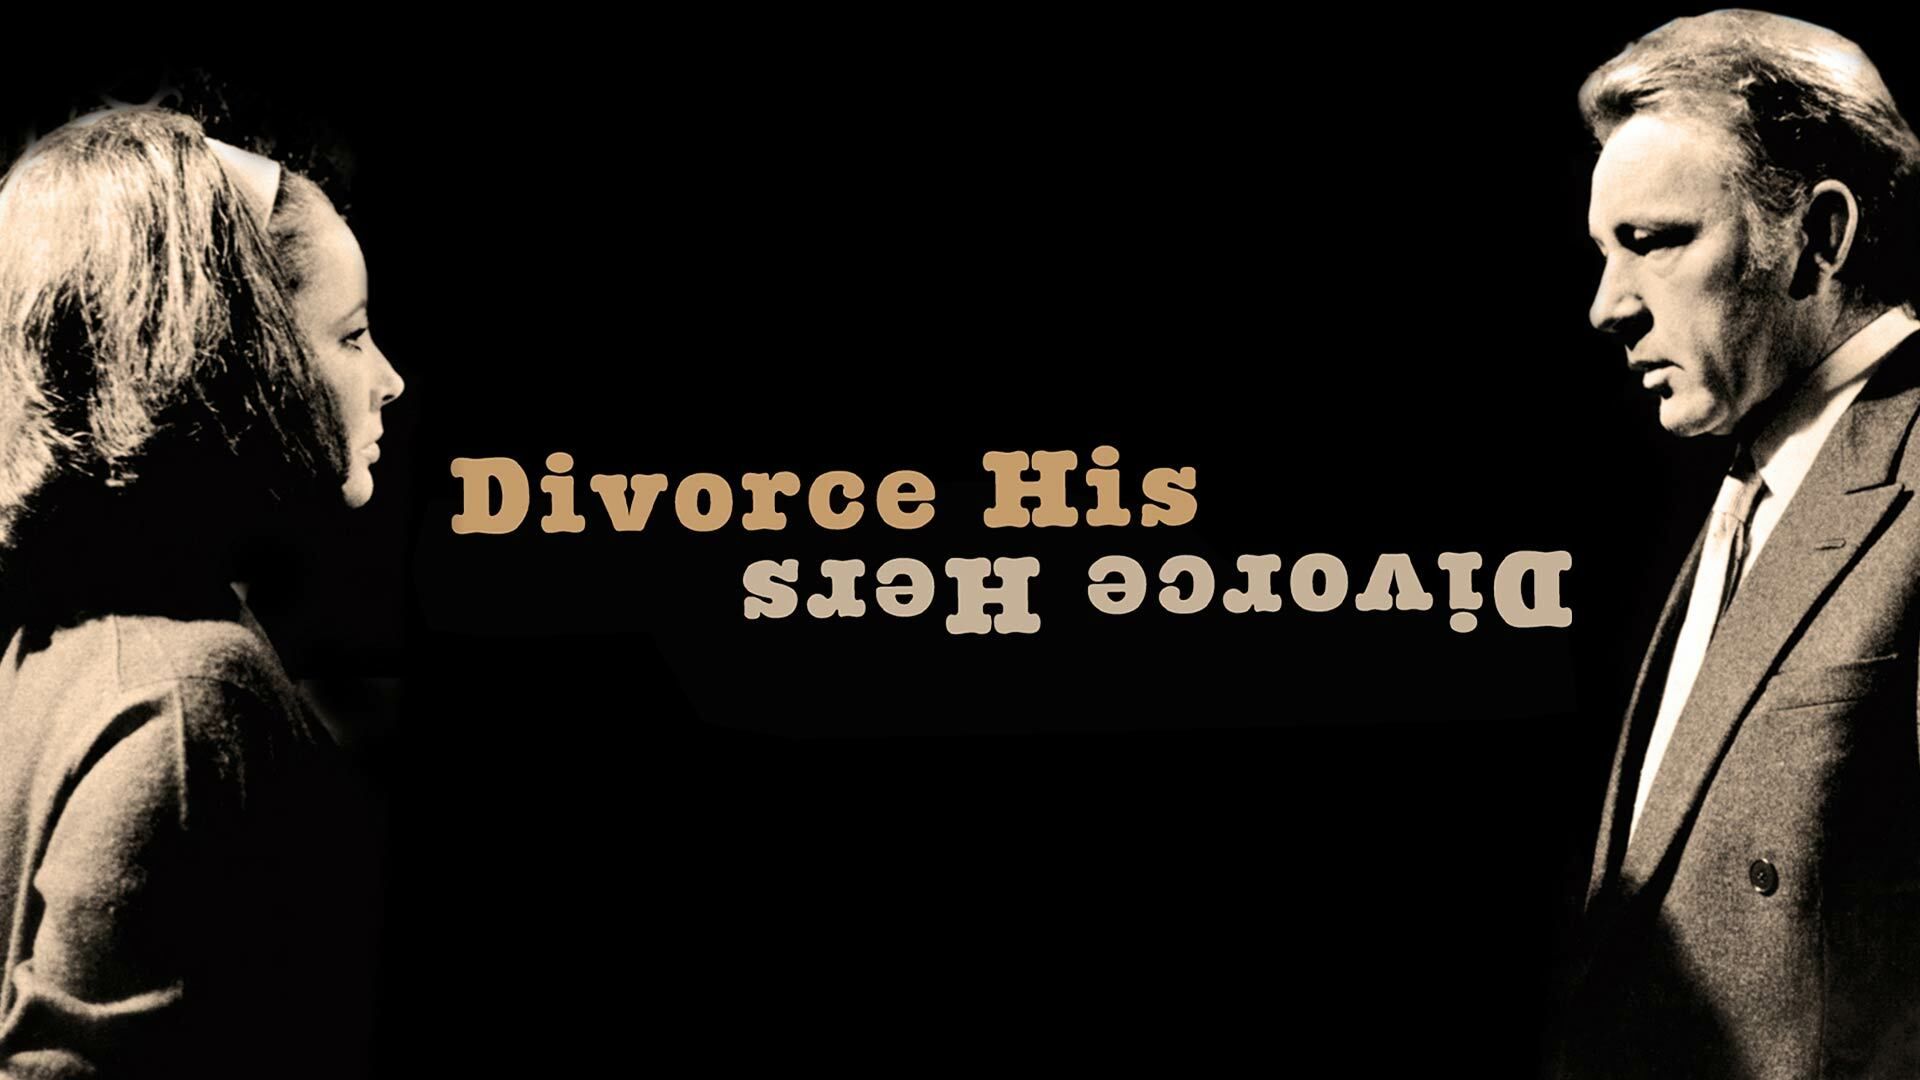 Divorce His - Divorce Hers Backdrop